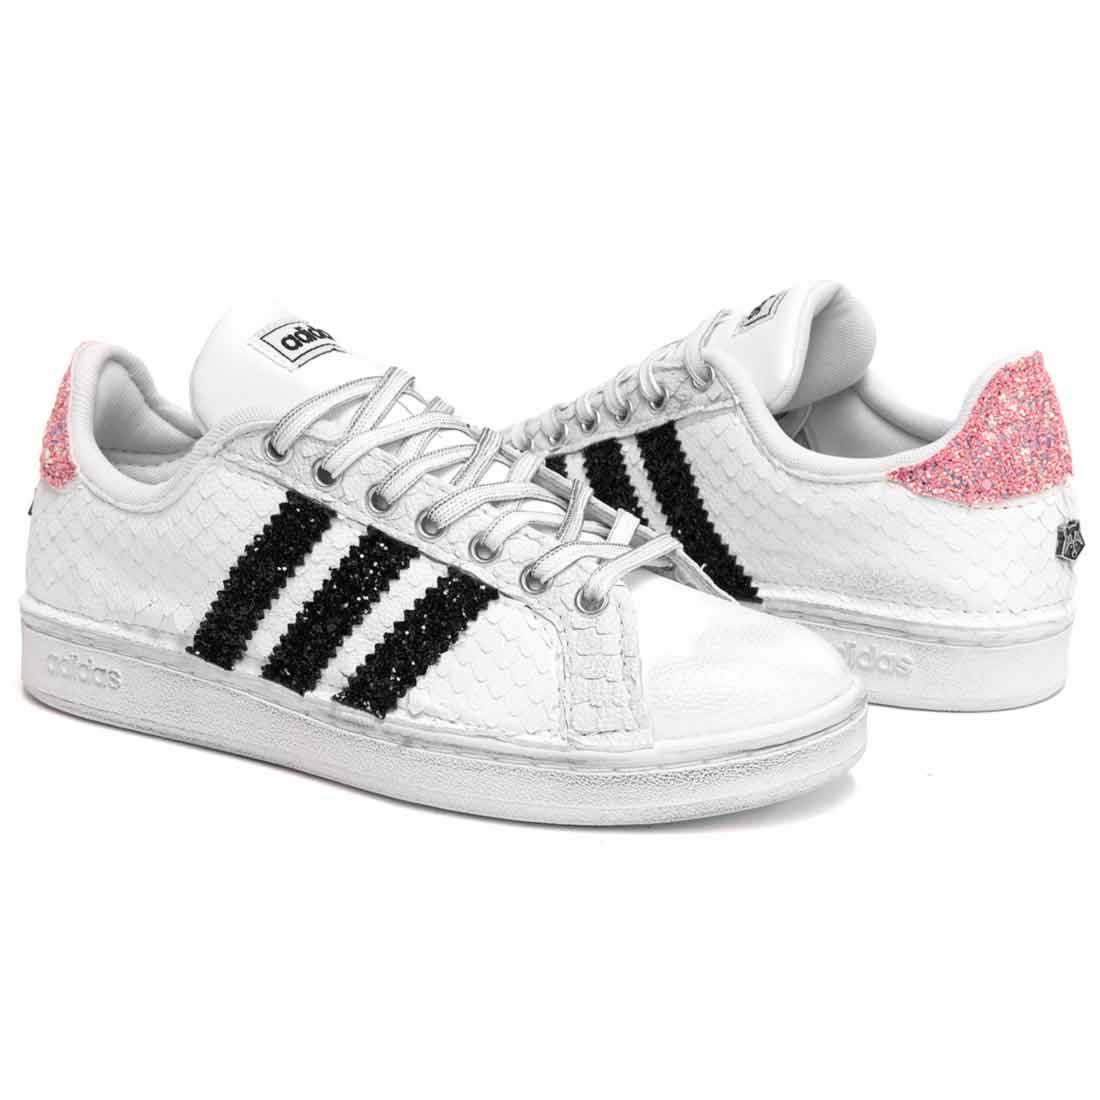 sneakers adidas grand court con brillantini neri e rosa con squame bianche